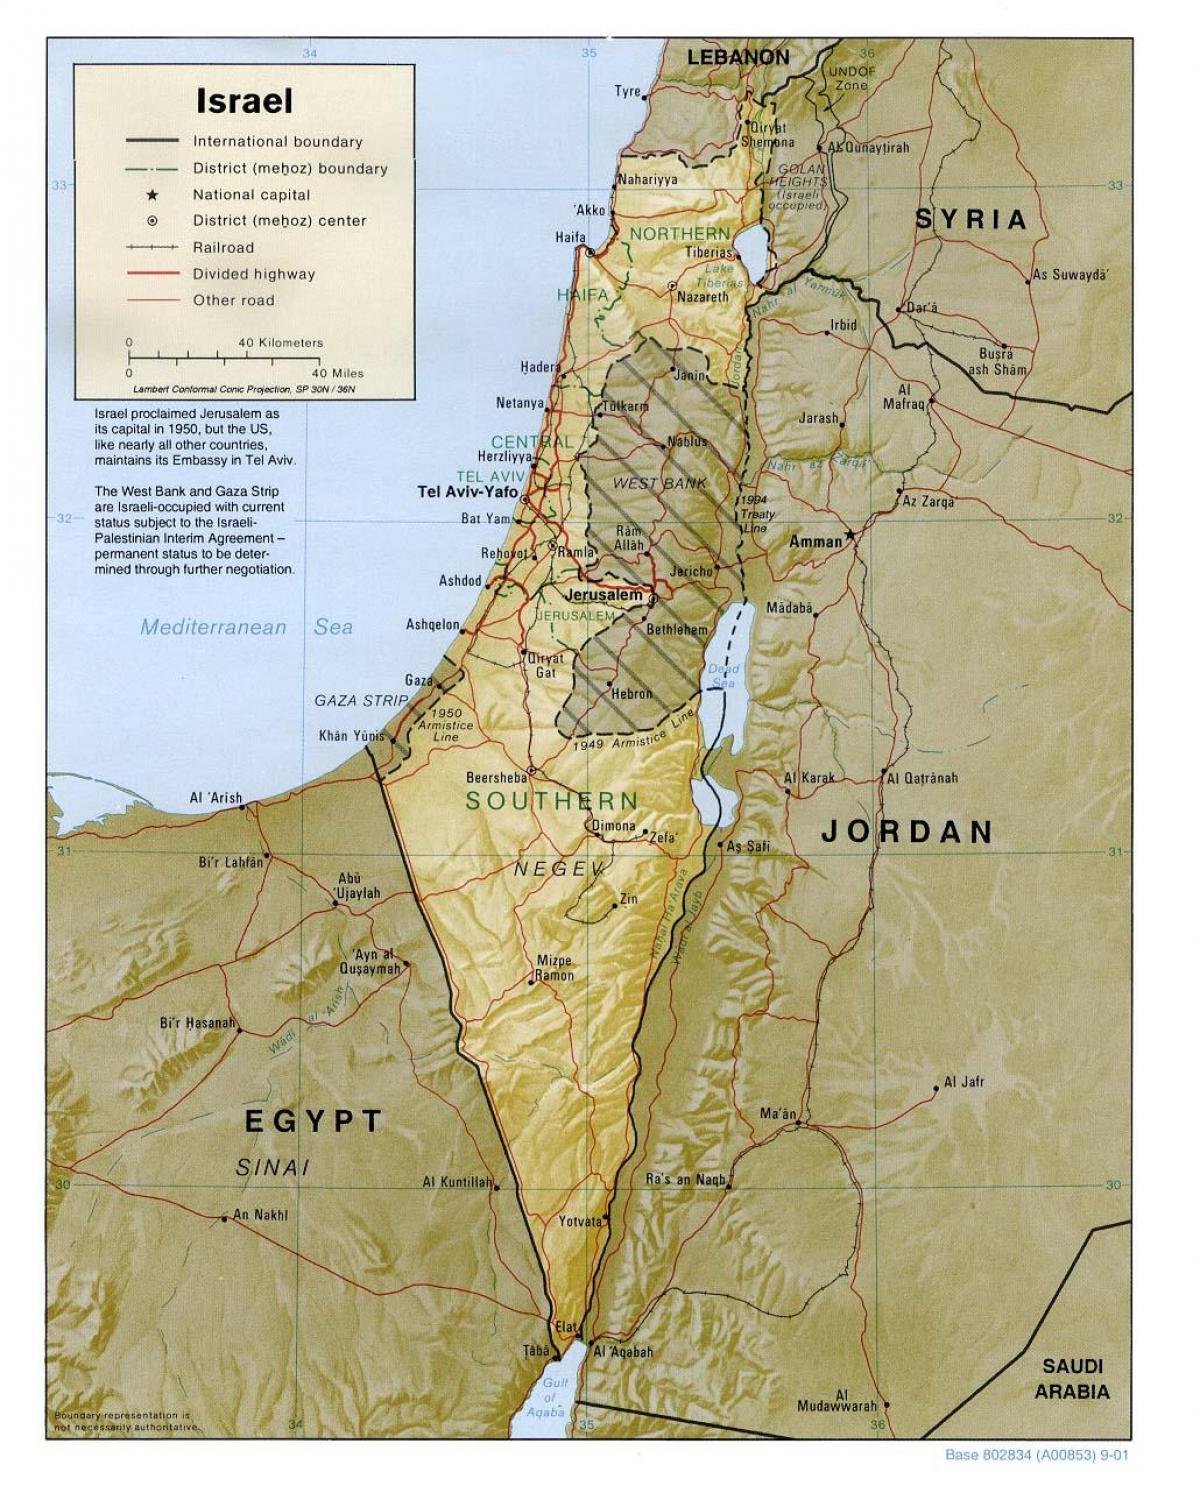 اسرائیل کا نقشہ جغرافیہ 